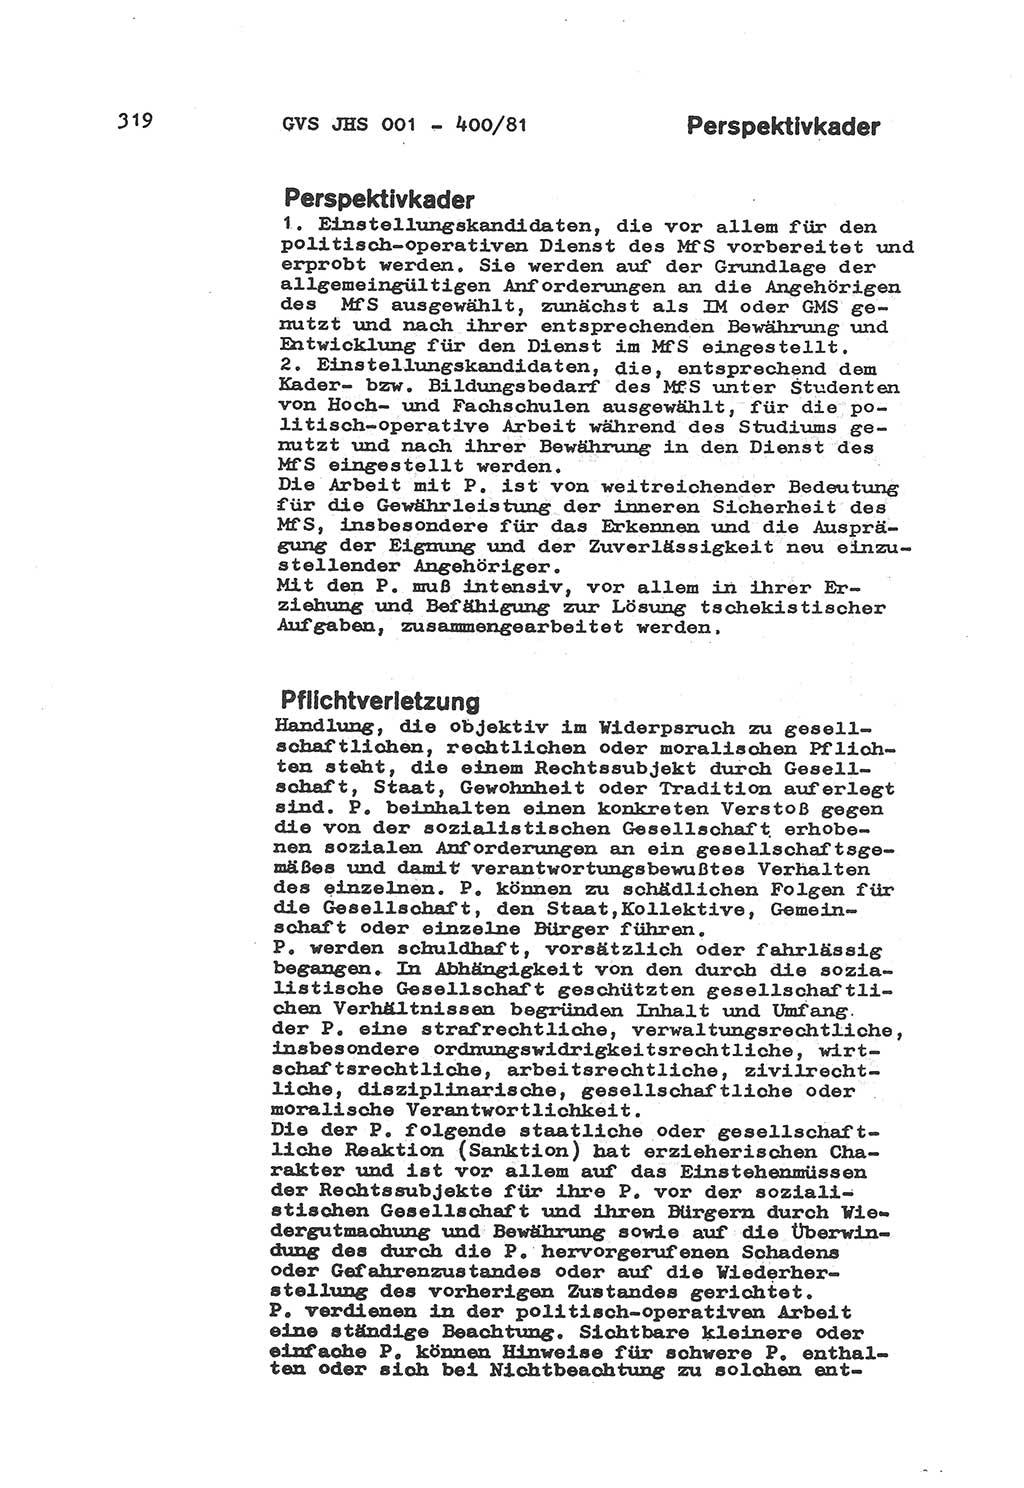 Wörterbuch der politisch-operativen Arbeit, Ministerium für Staatssicherheit (MfS) [Deutsche Demokratische Republik (DDR)], Juristische Hochschule (JHS), Geheime Verschlußsache (GVS) o001-400/81, Potsdam 1985, Blatt 319 (Wb. pol.-op. Arb. MfS DDR JHS GVS o001-400/81 1985, Bl. 319)